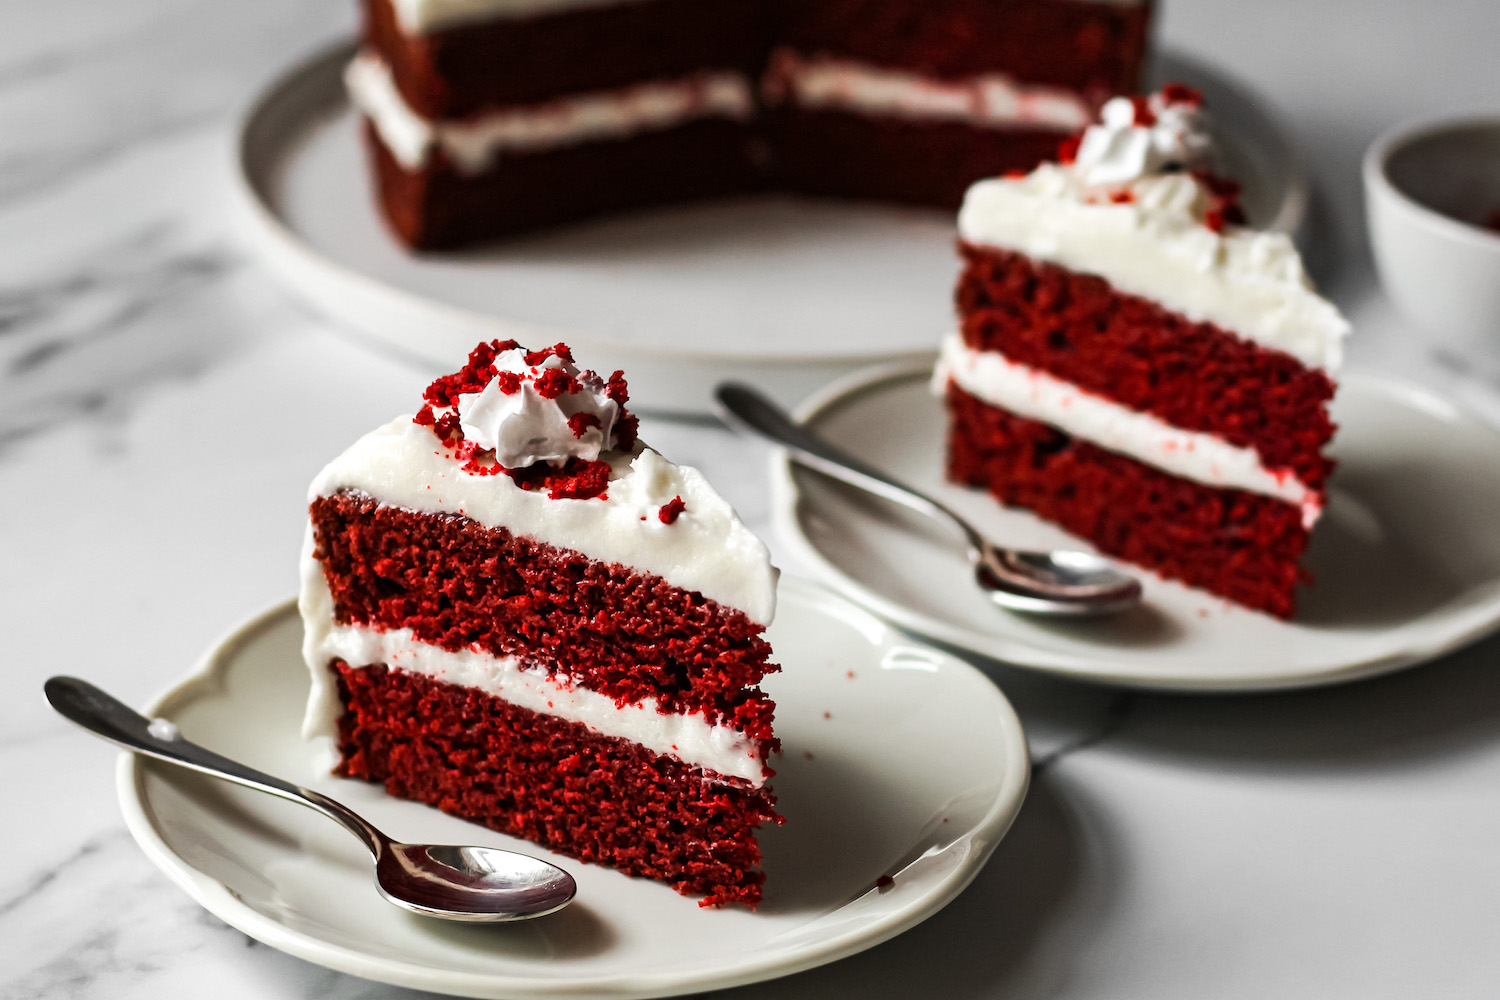 Today Red Velvet - Cake 50гр